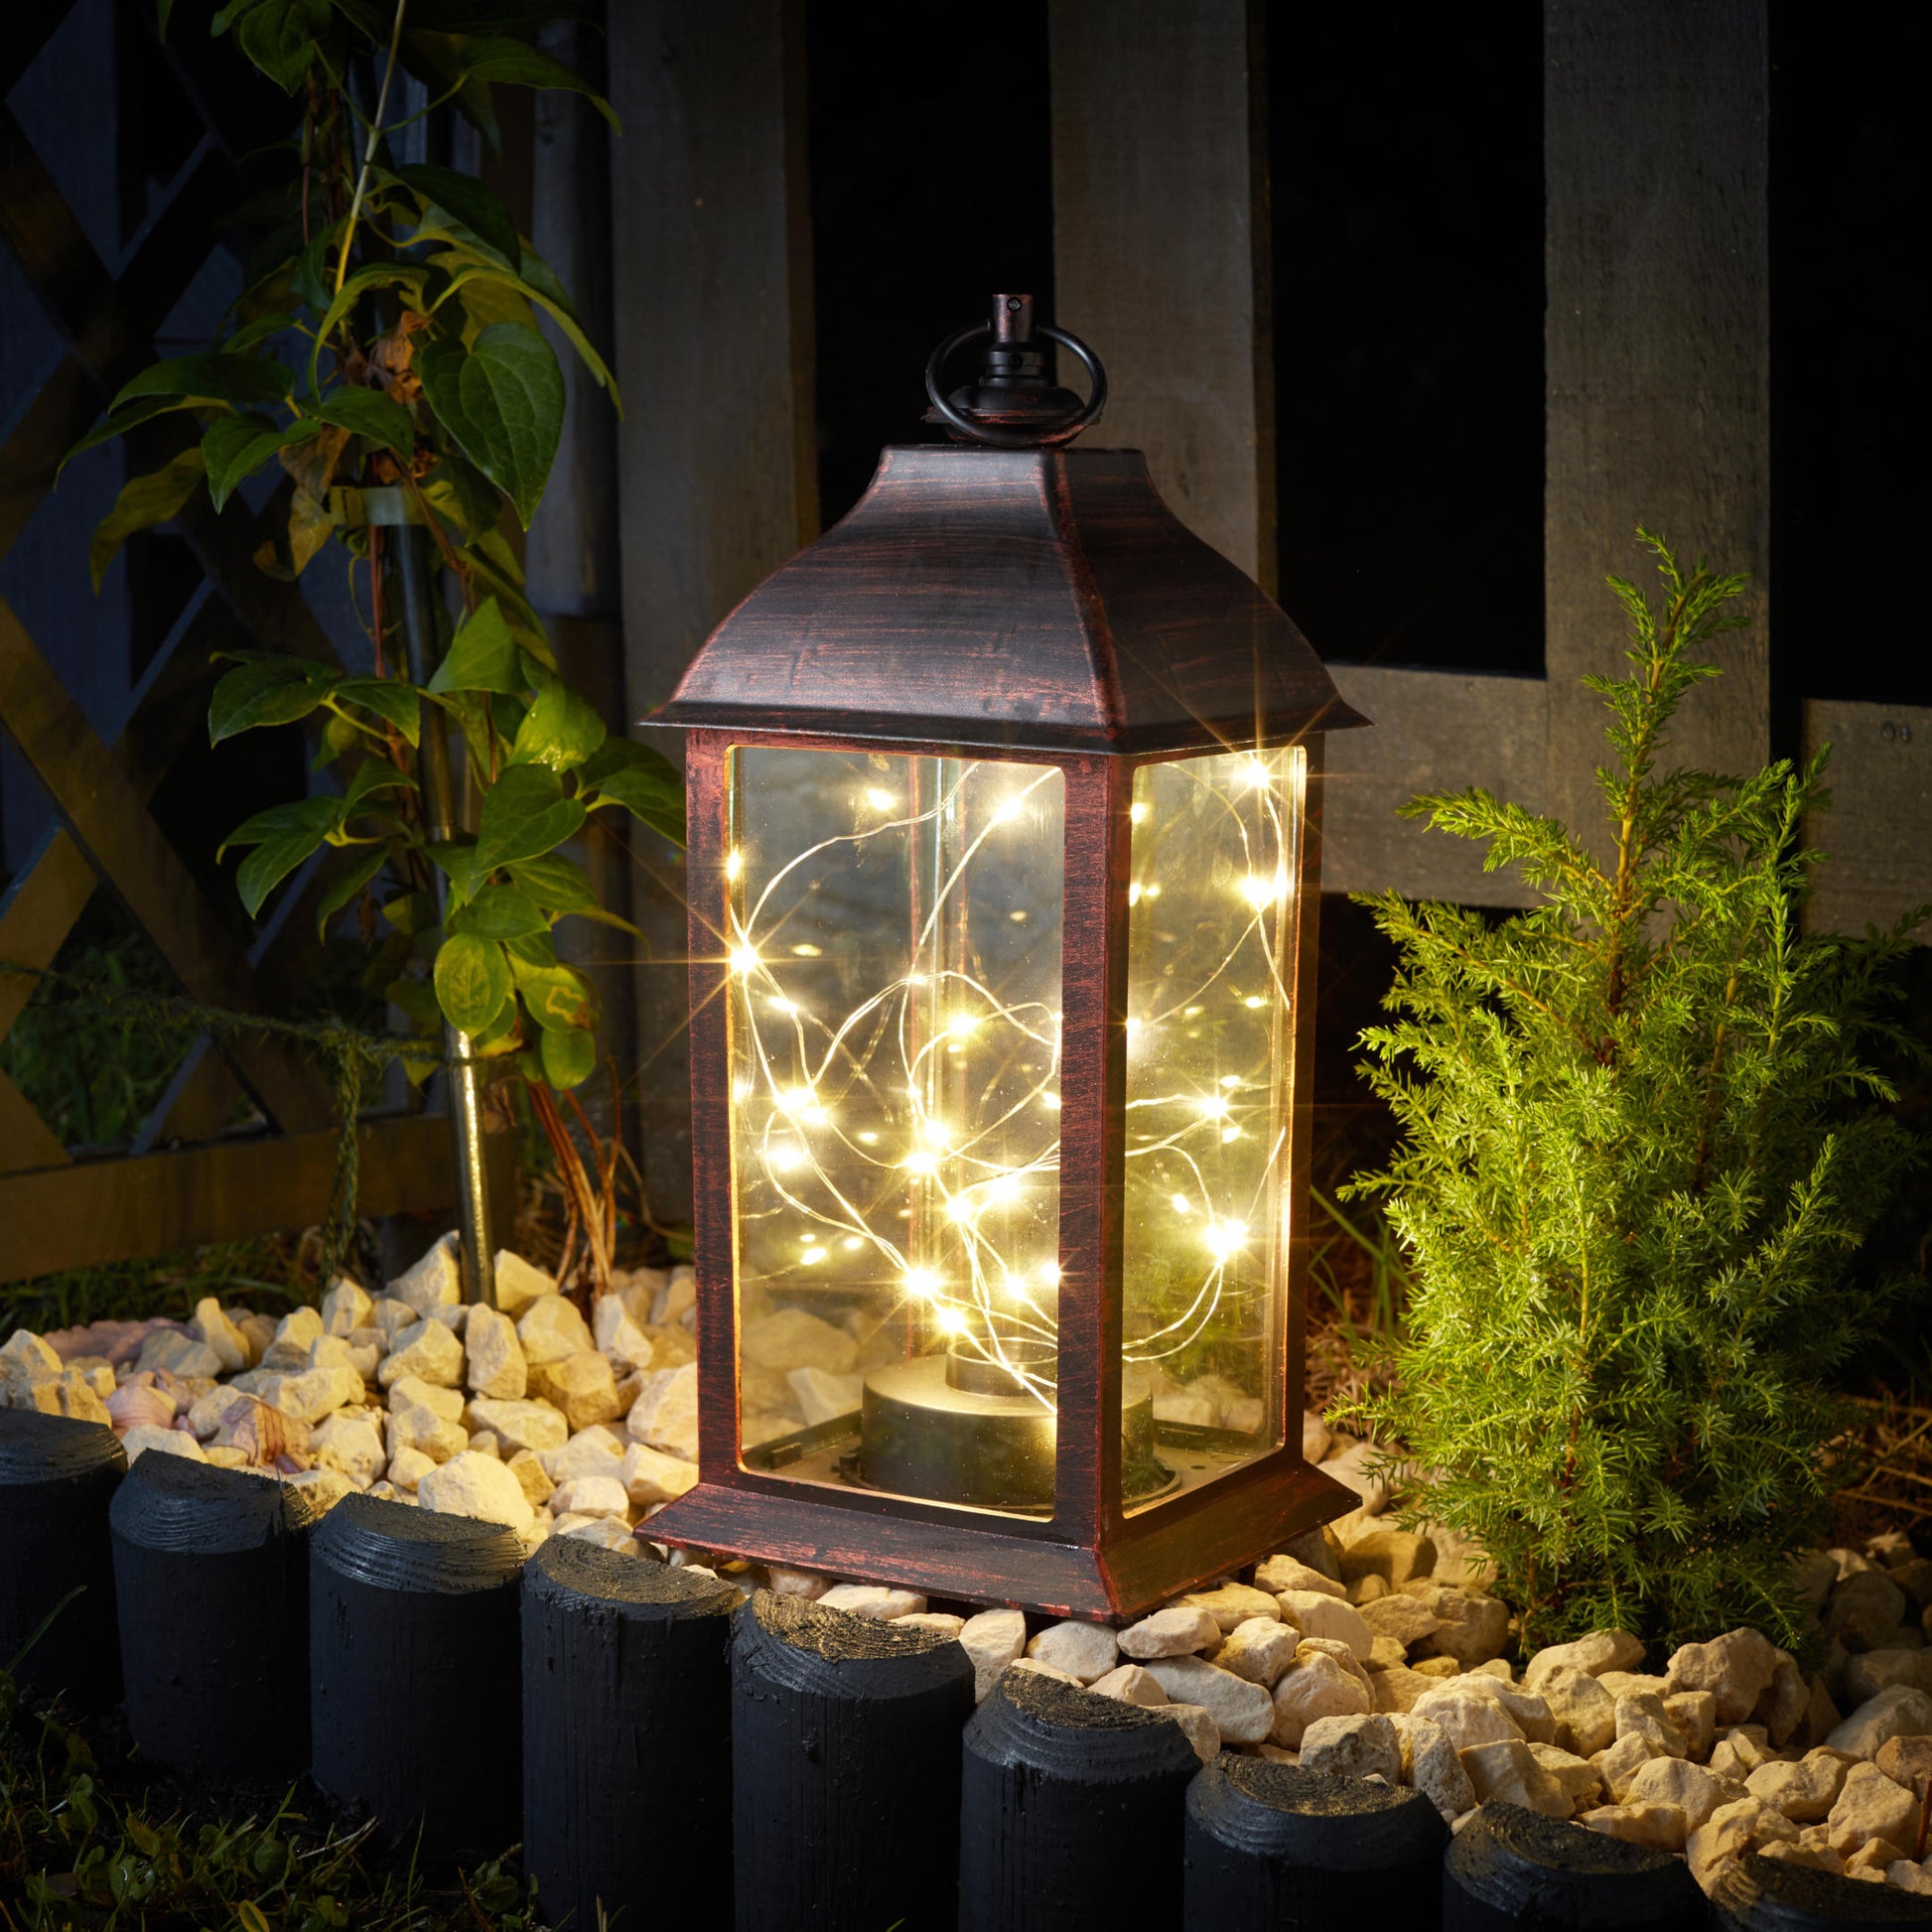 Tradičný lampáš ozdobený 30 teplými bielymi LEDkami na tenkom drôtiku vytvára v záhrade svetluškine svetlo